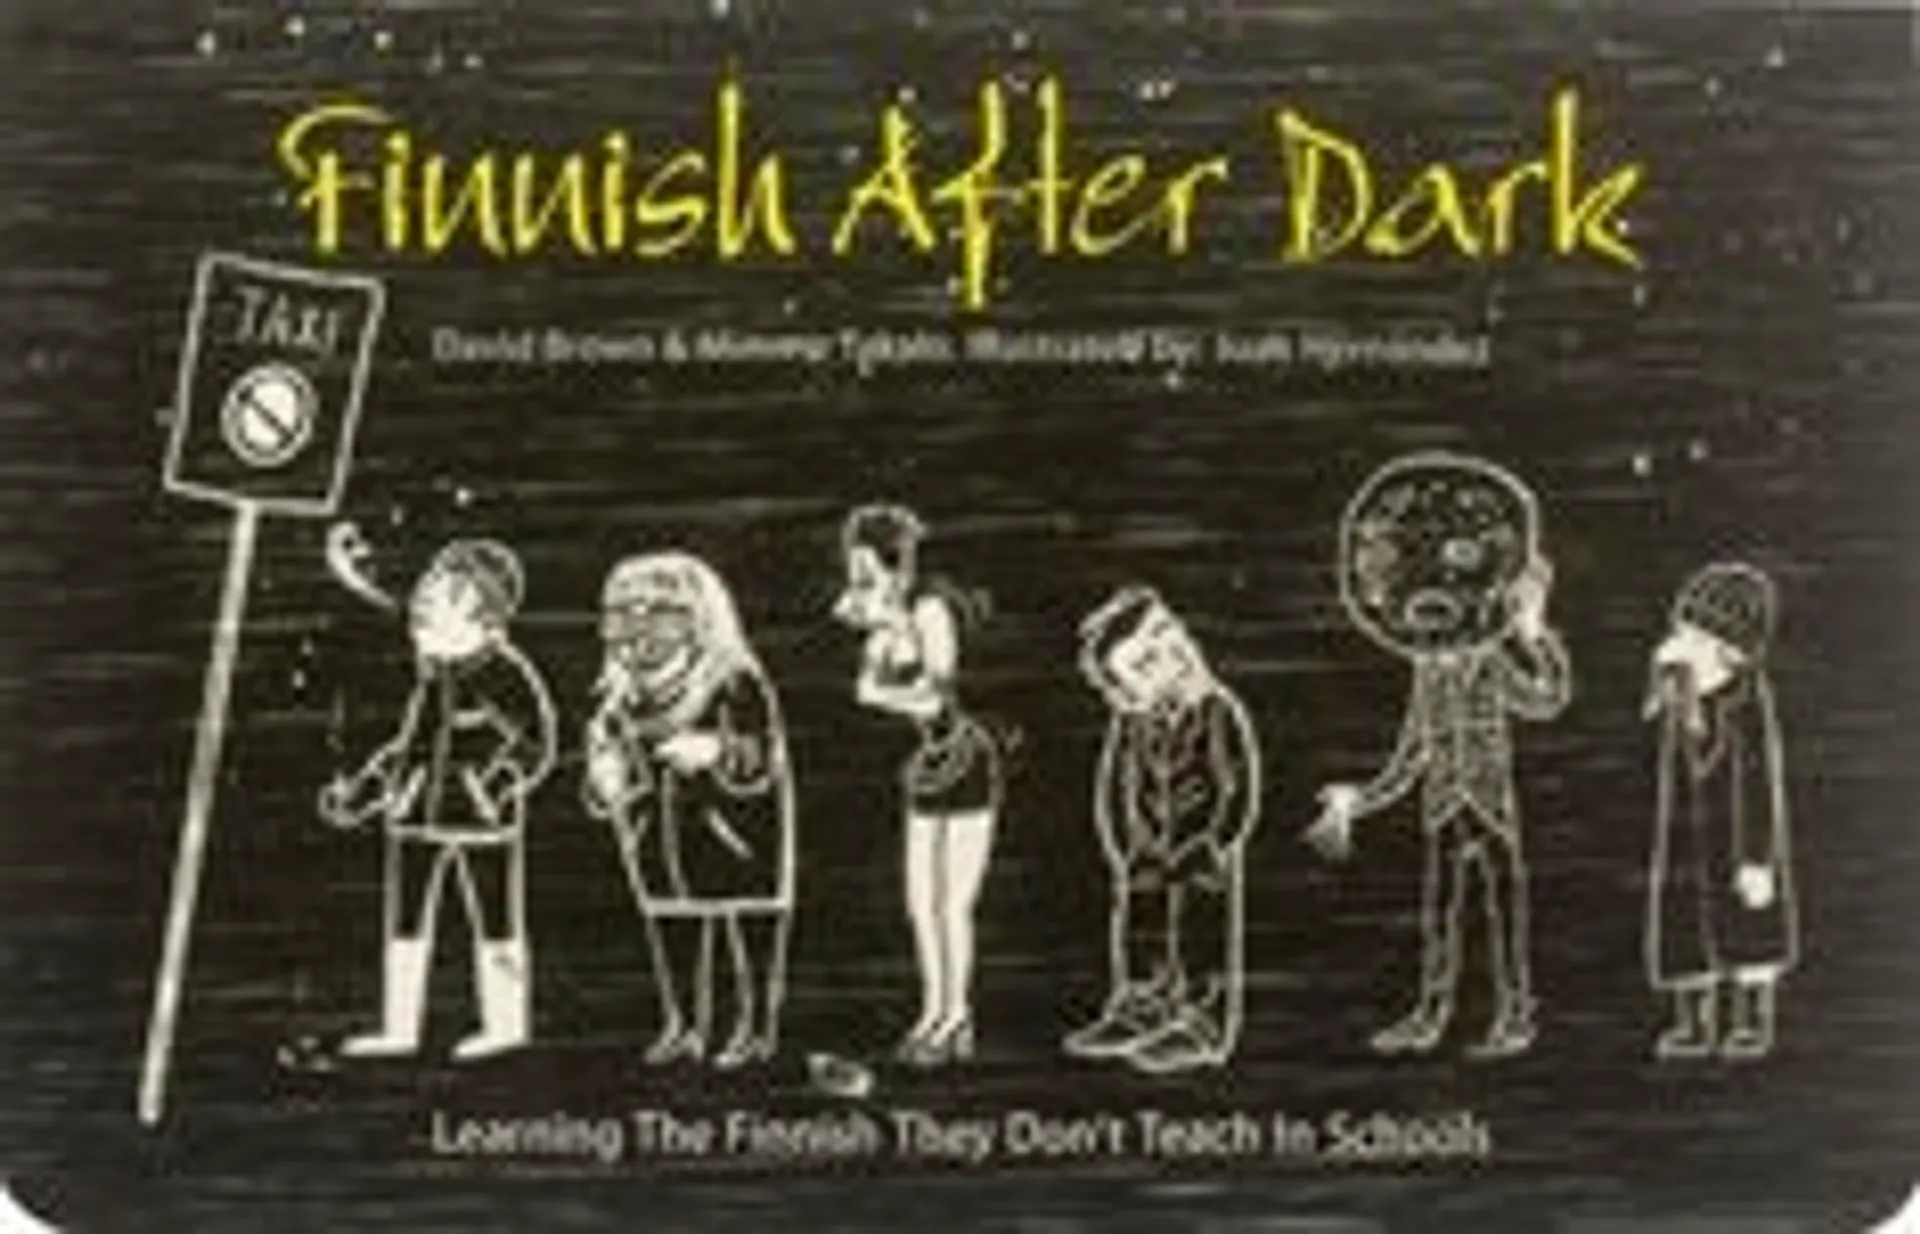 Finnish After Dark